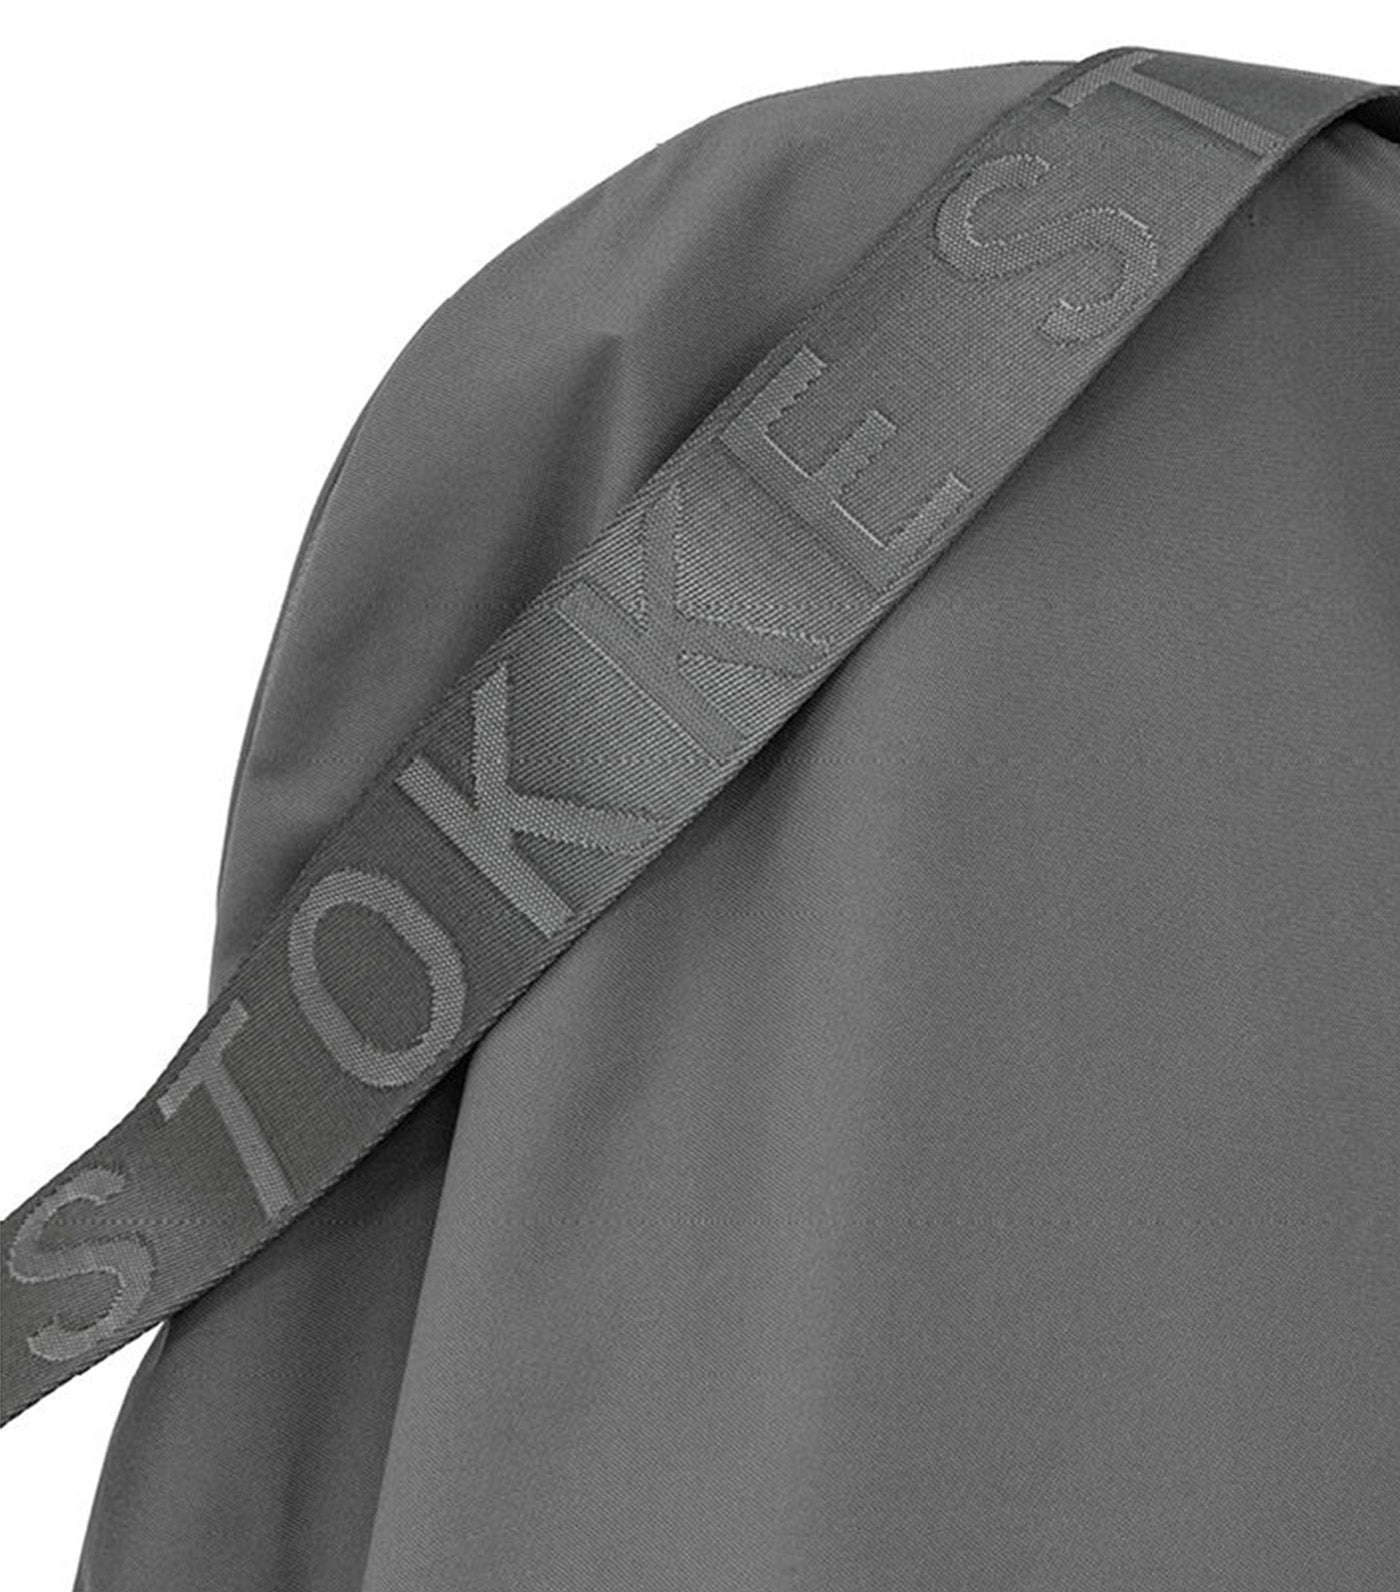 Clikk™ Travel Bag Dark Gray